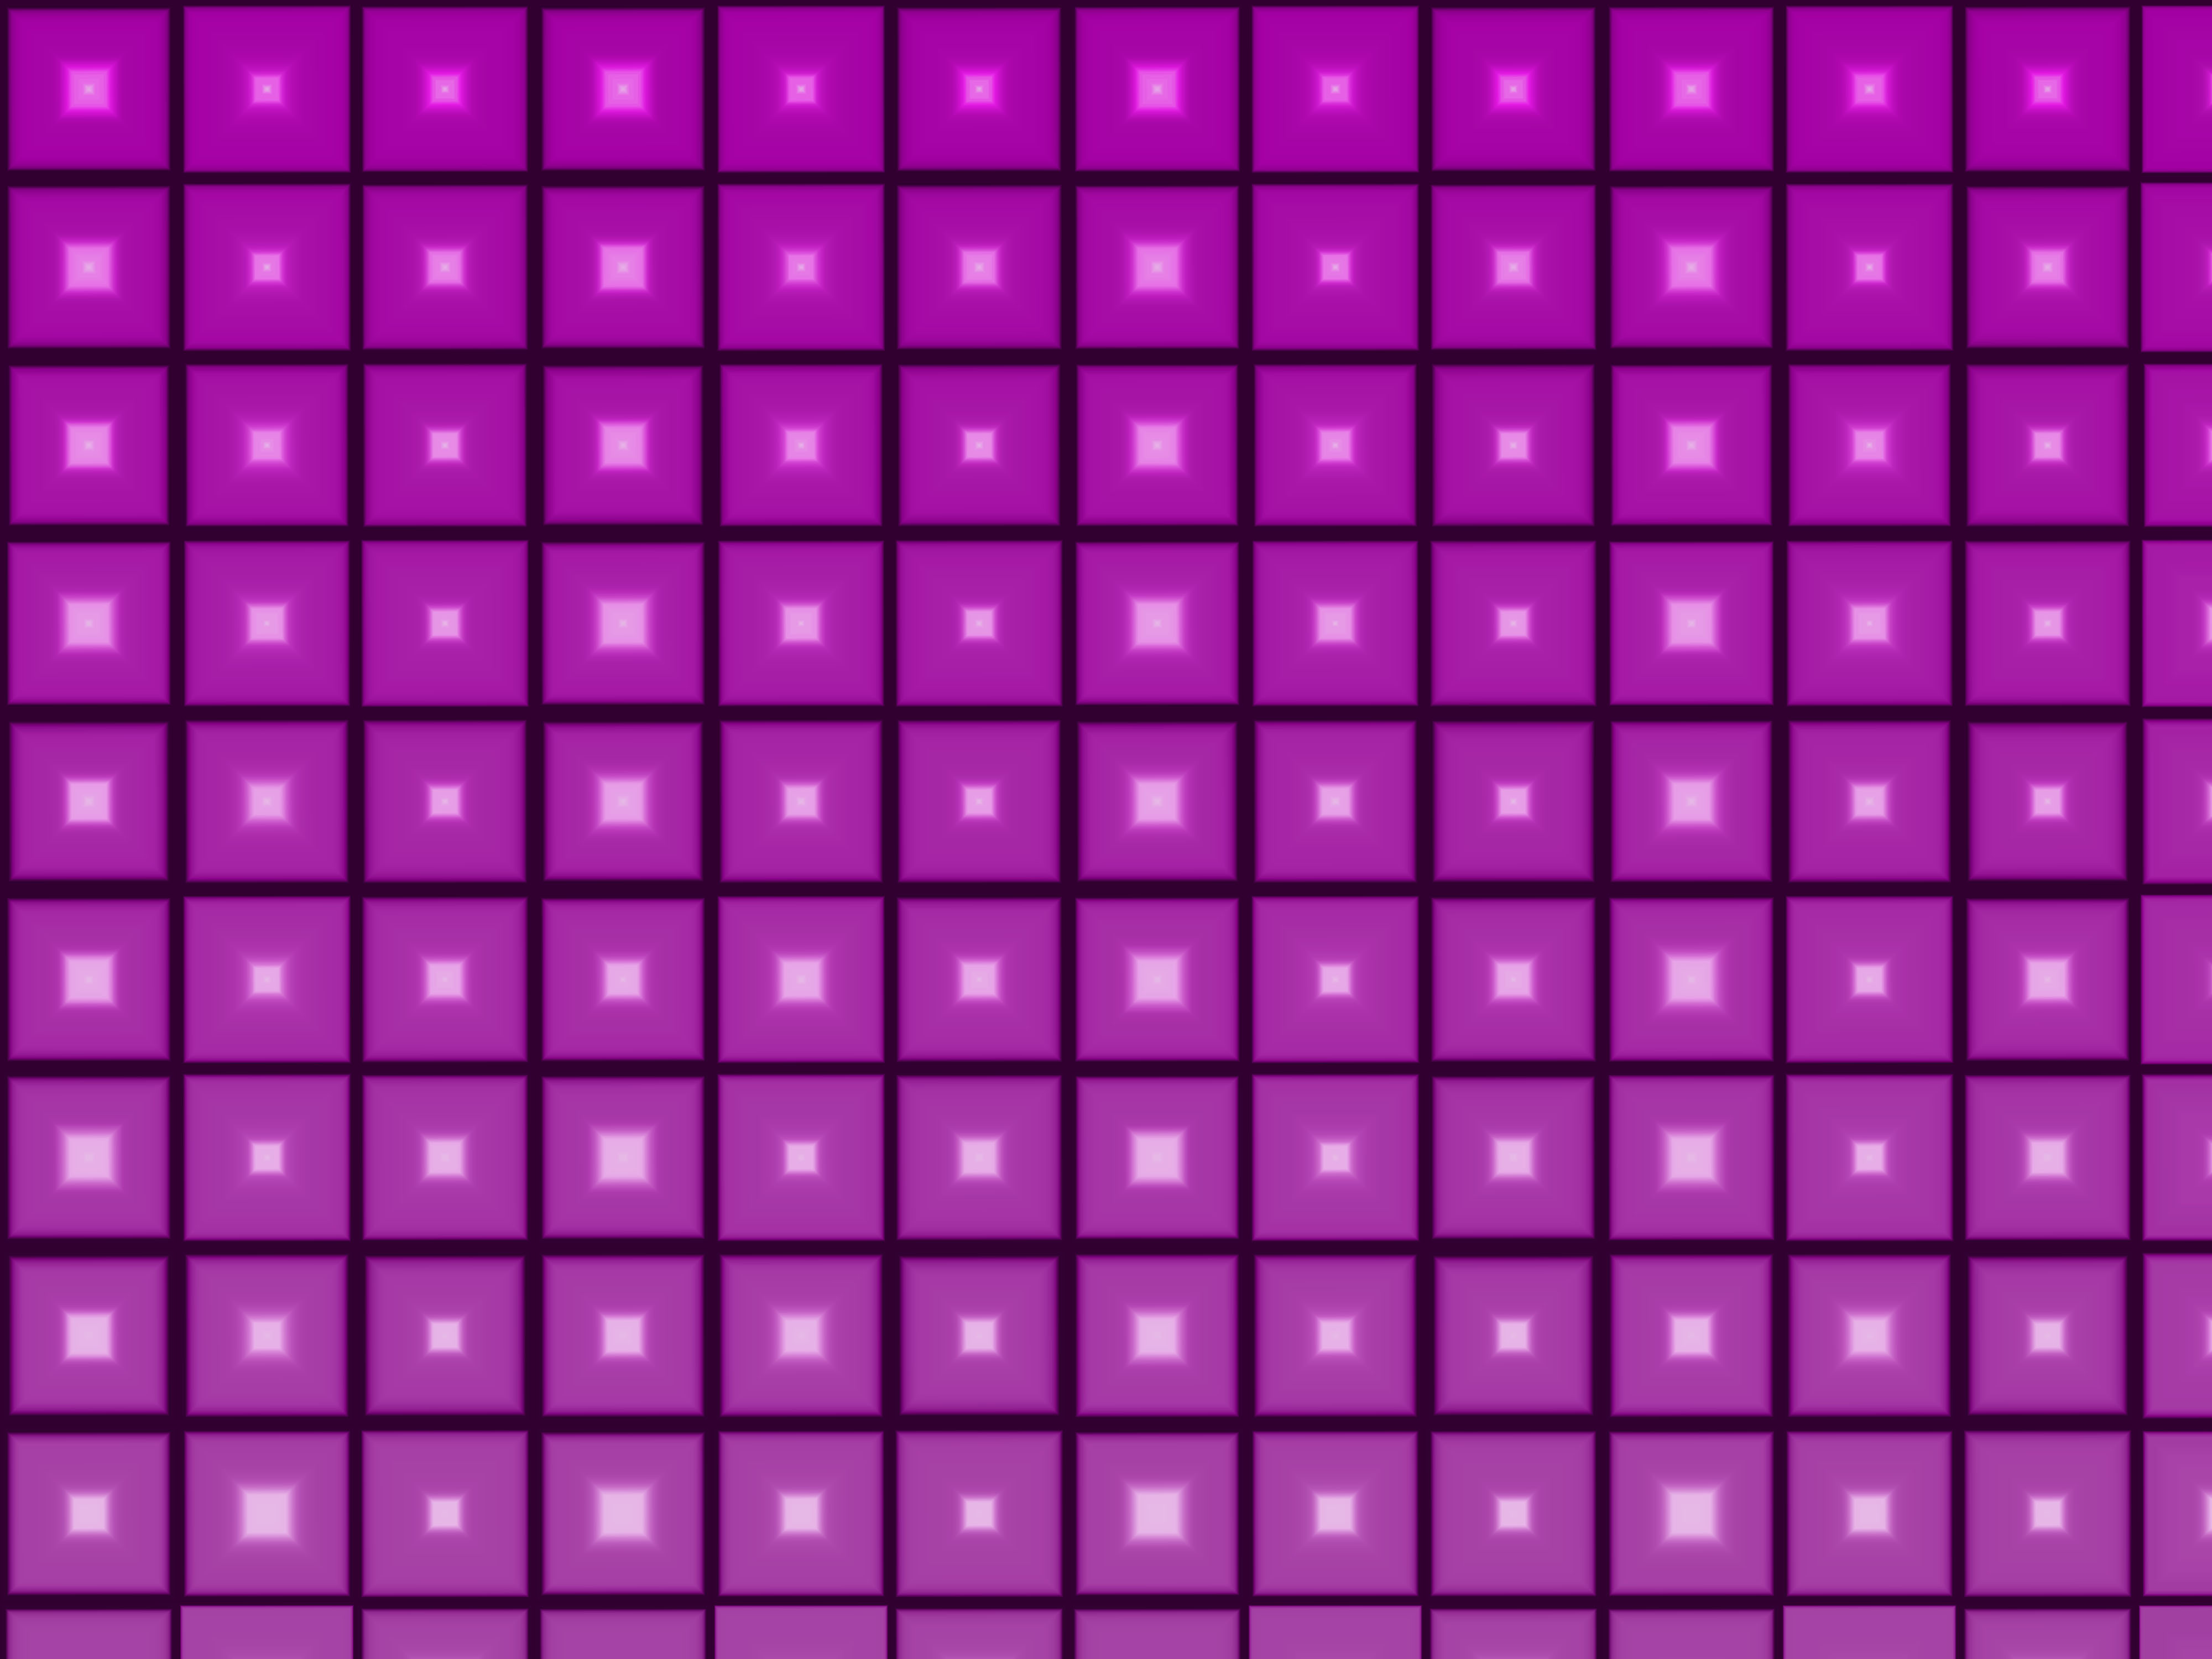 Mobile HD Wallpaper Violet 